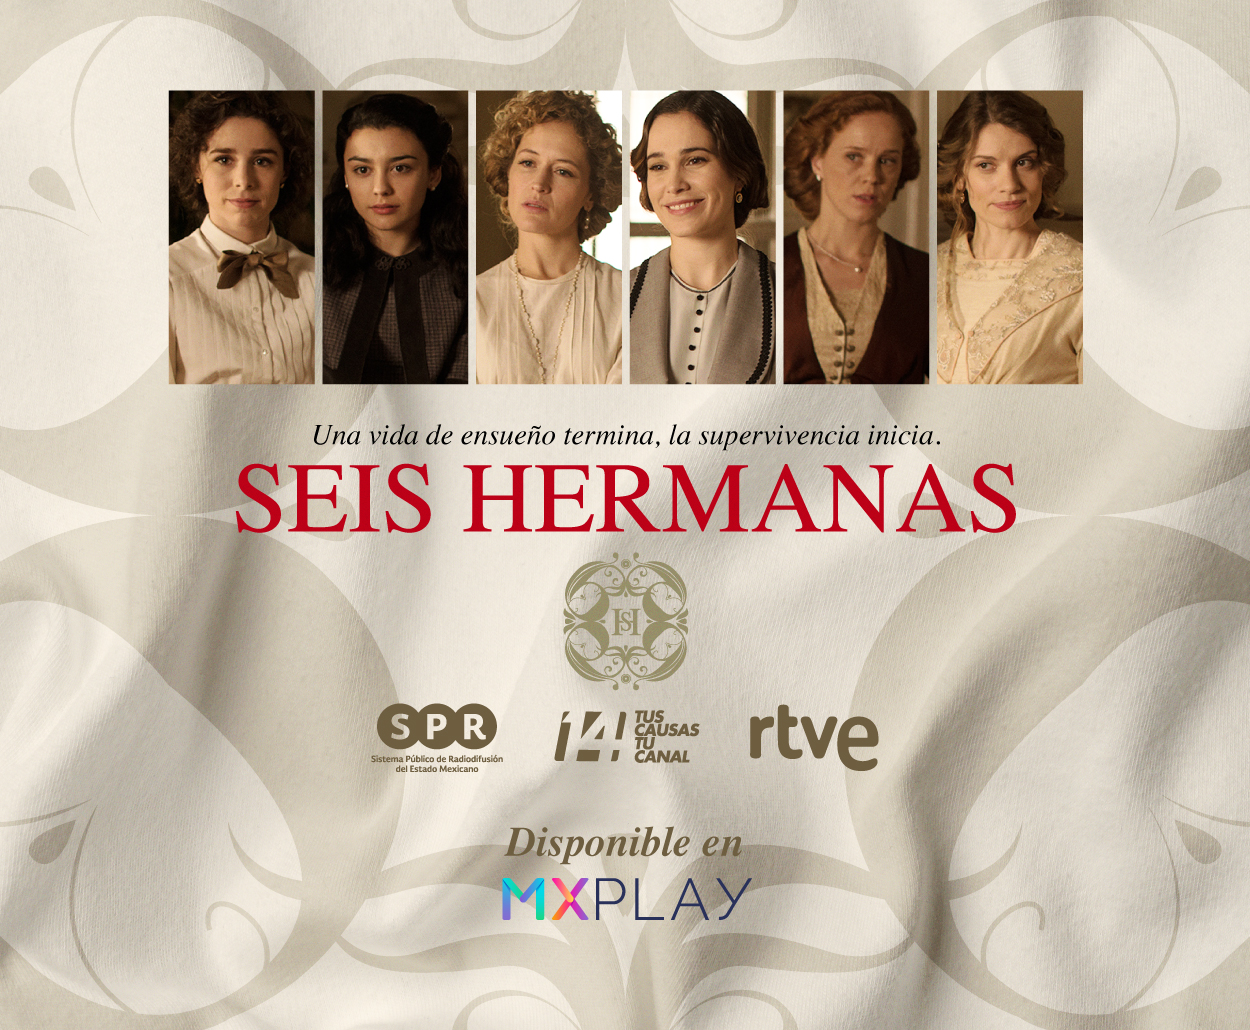 ¡“Seis Hermanas”, la serie de TVE que ha conquistado al público en México, continúa por Canal Catorce y ahora también en la plataforma MX Play del SPR!